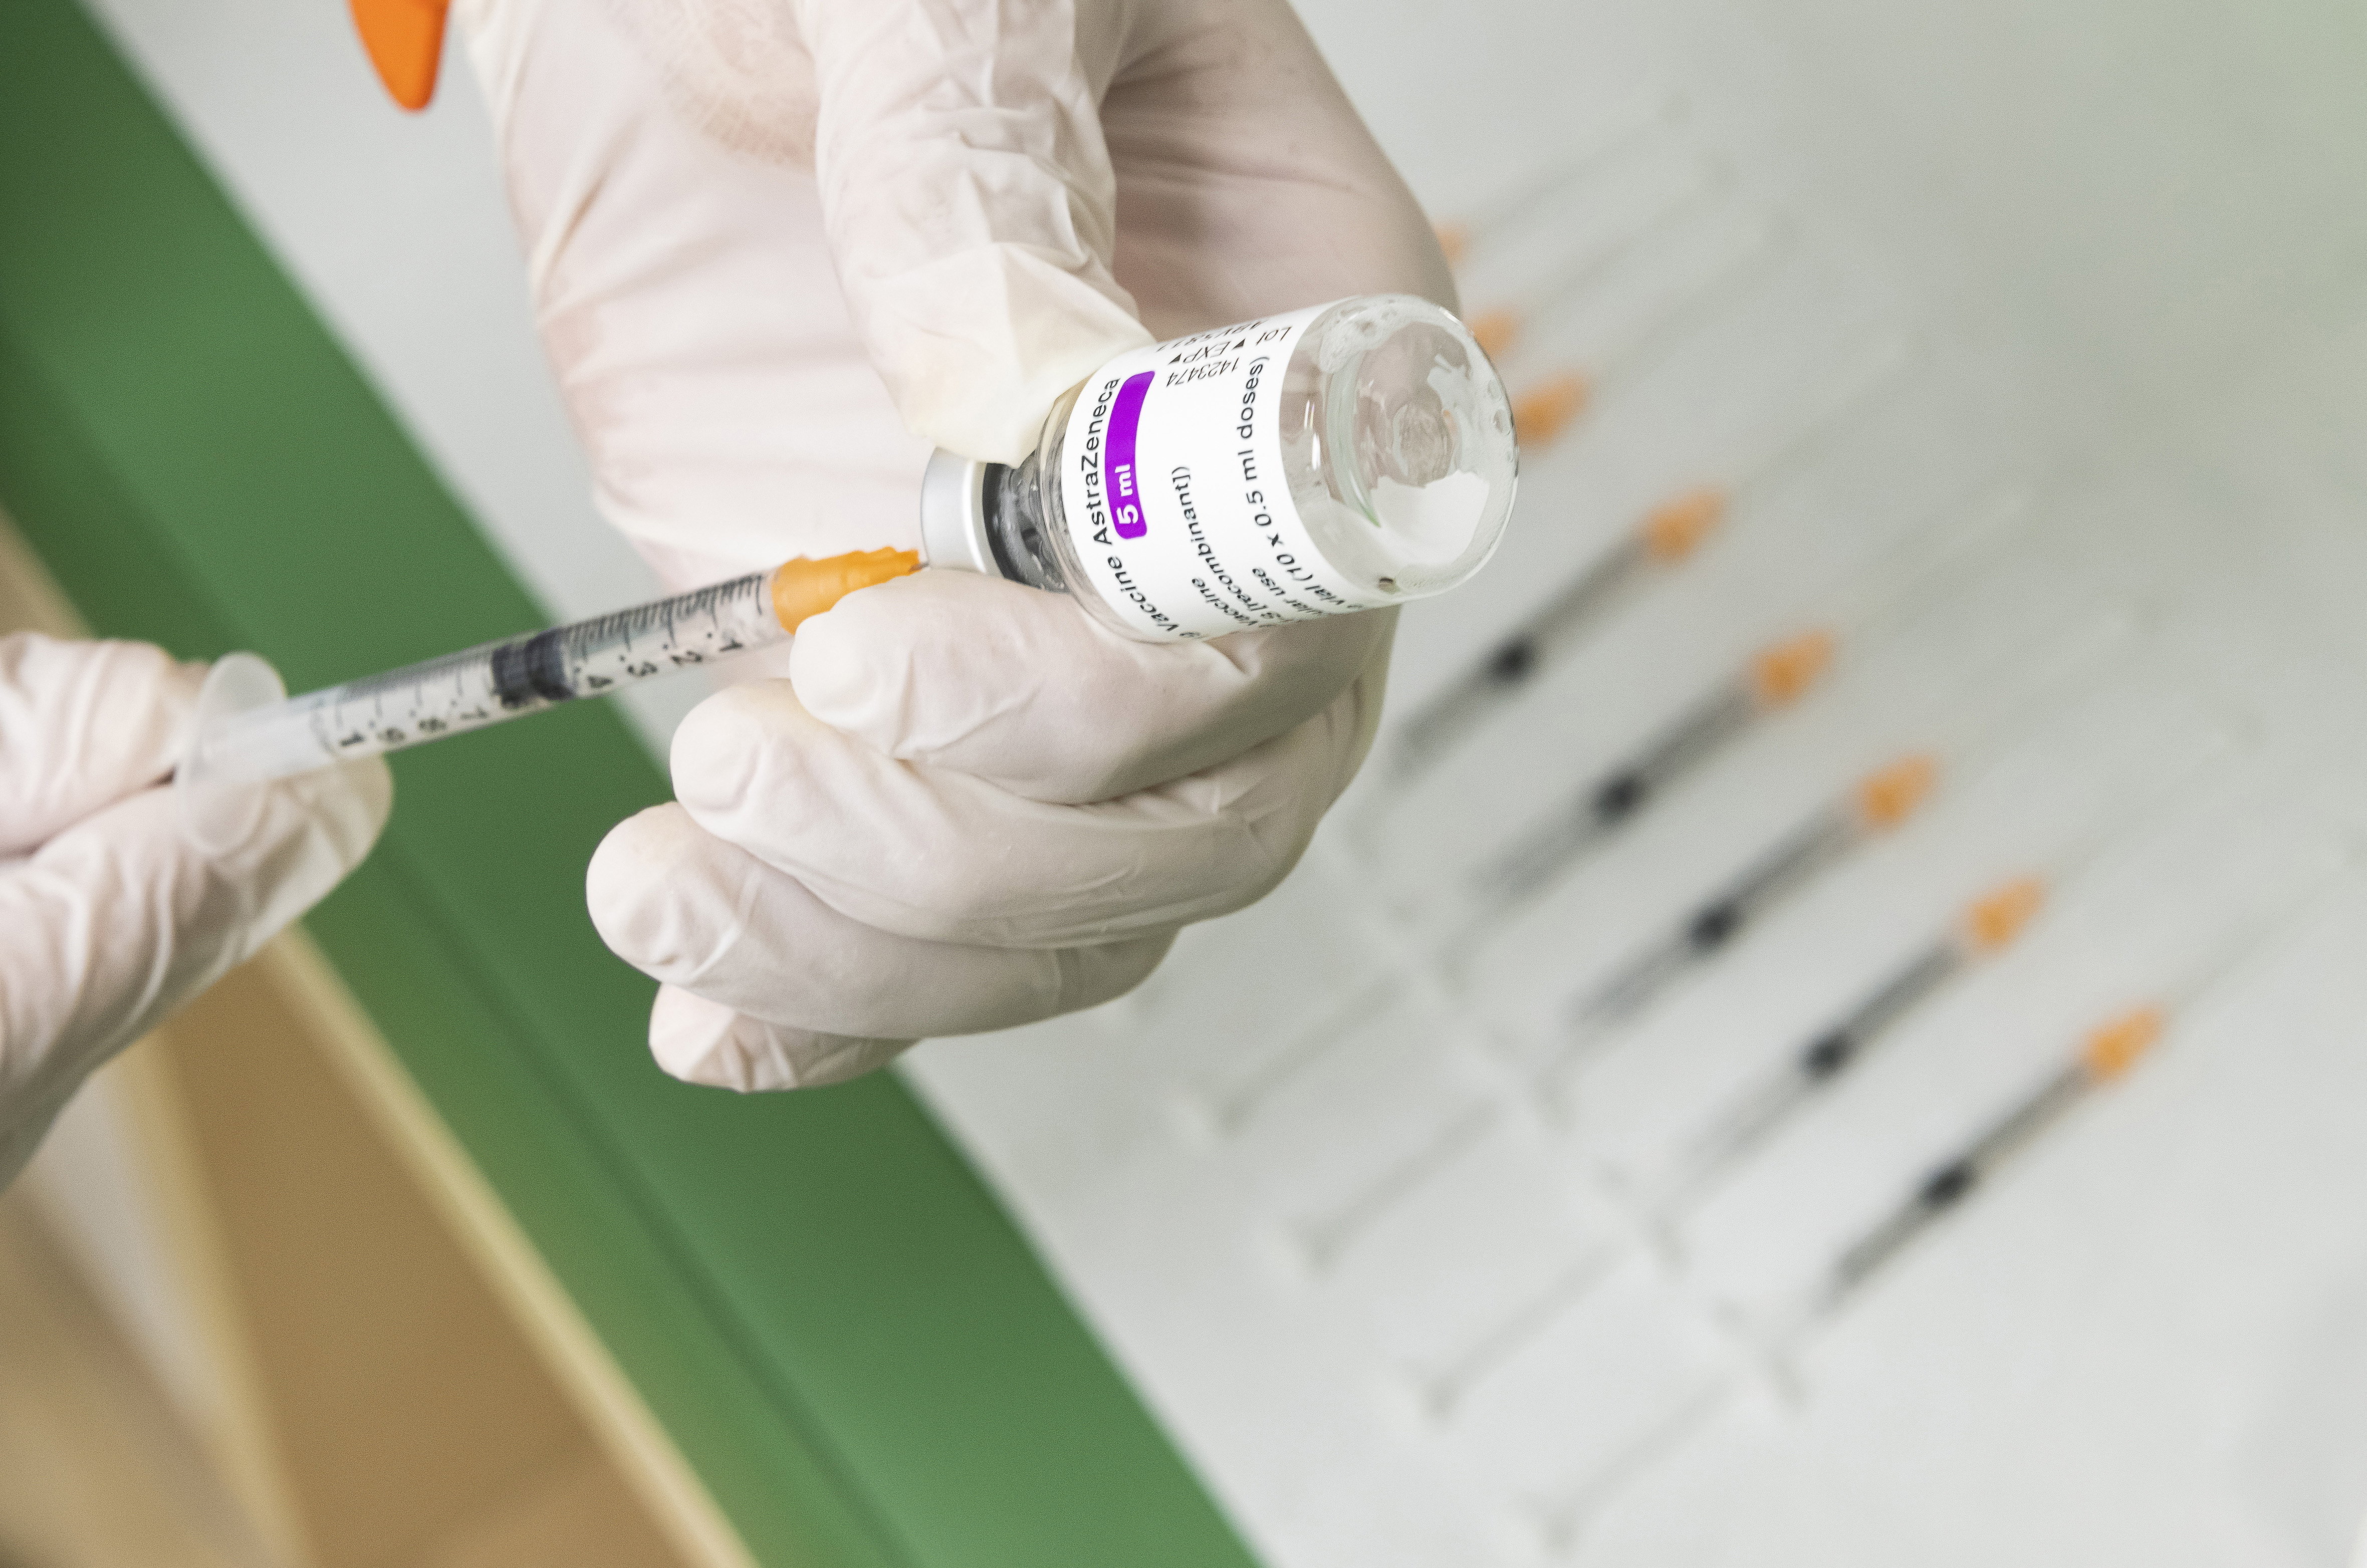 Az EMA egyik vezető tisztségviselője szerint egyre nehezebb azt állítani, hogy nincs összefüggés az AstraZeneca-vakcina és a vérrögképződéses esetek között